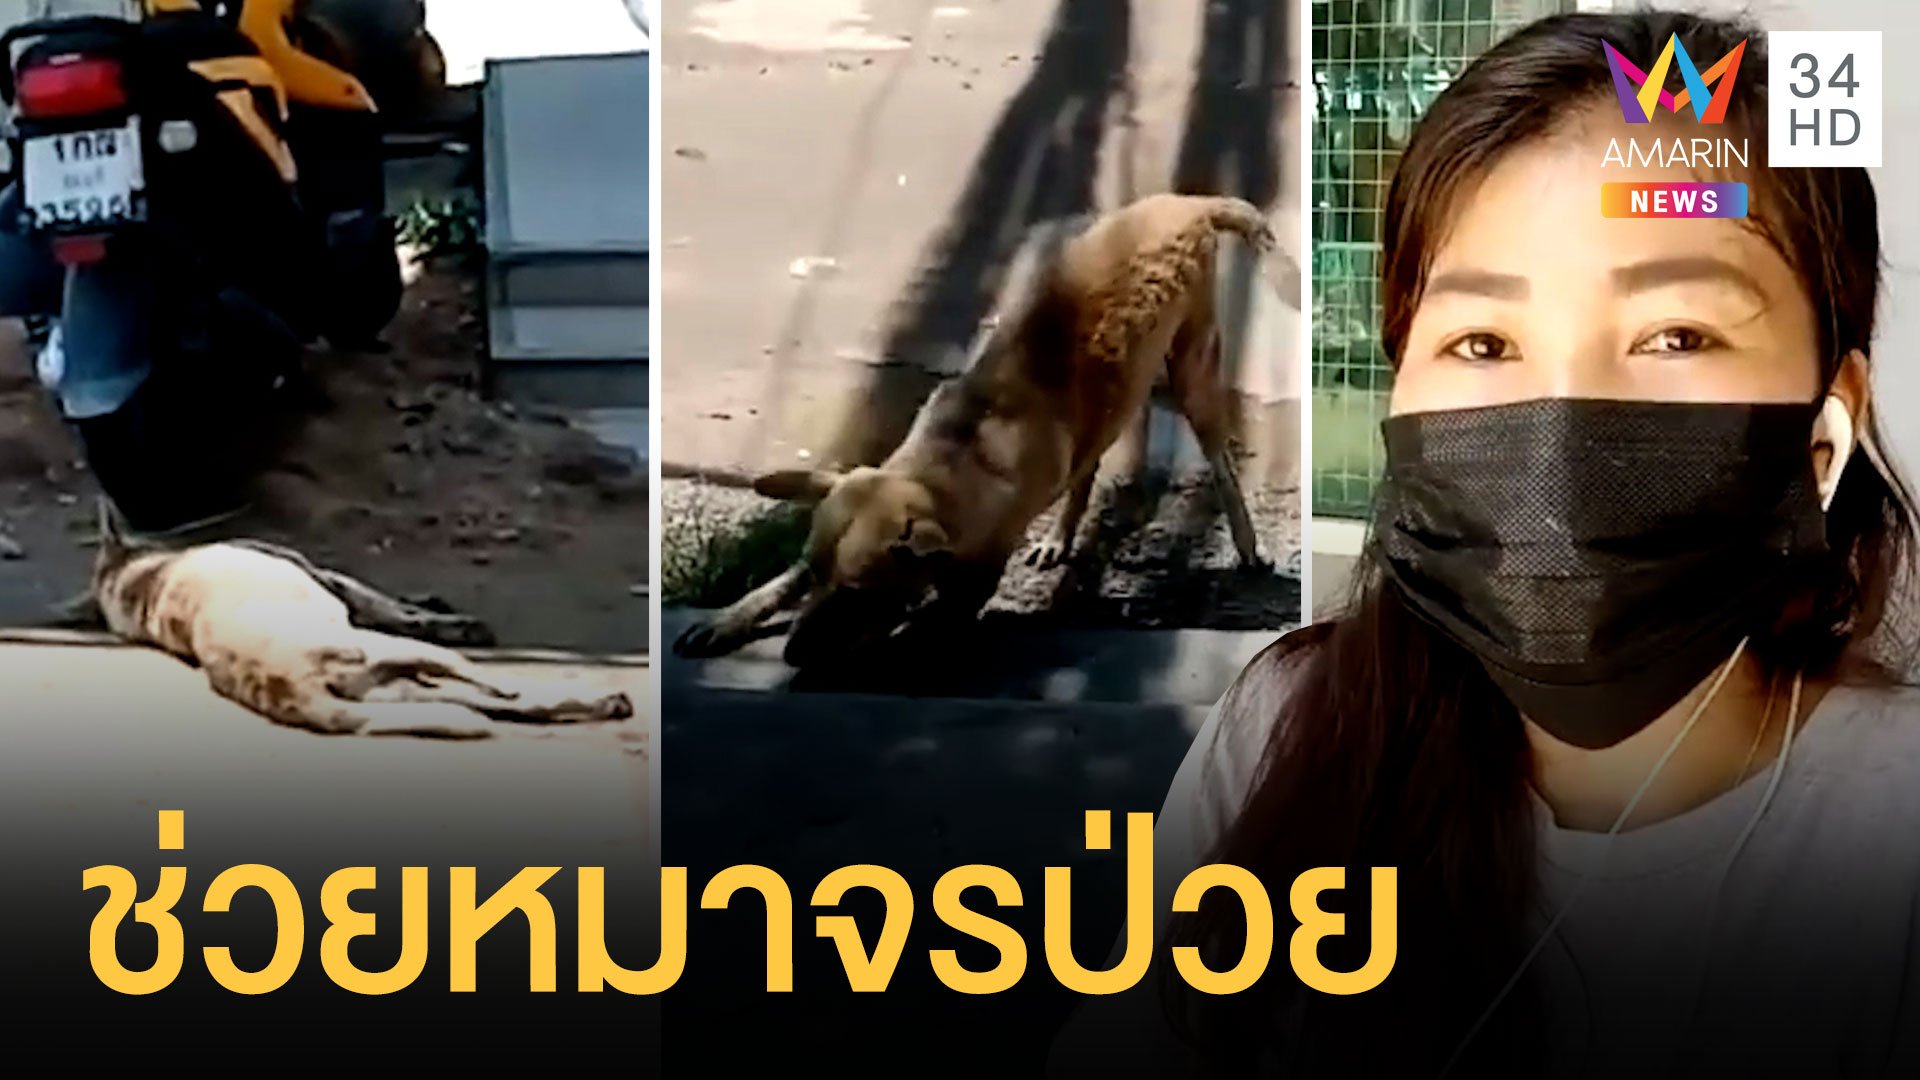 สาวน้ำใจงามจอดรถช่วยหมานอนชักข้างถนน | ข่าวอรุณอมรินทร์ | 16 เม.ย. 64 | AMARIN TVHD34